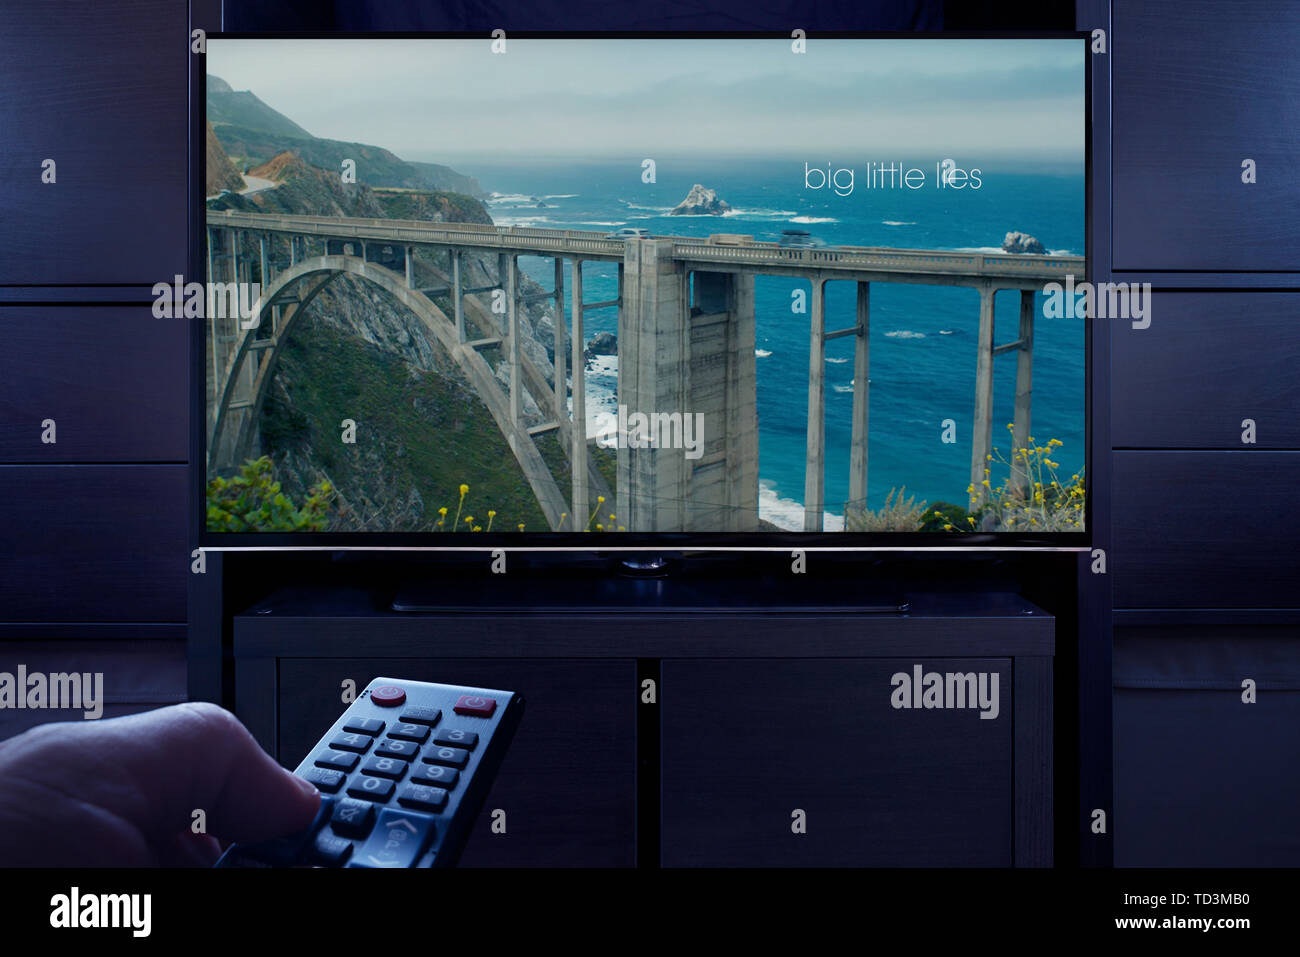 Un hombre apunta un control remoto de la televisión en la televisión que muestra la gran pantalla del título principal LITTLE LIES (uso Editorial solamente). Foto de stock